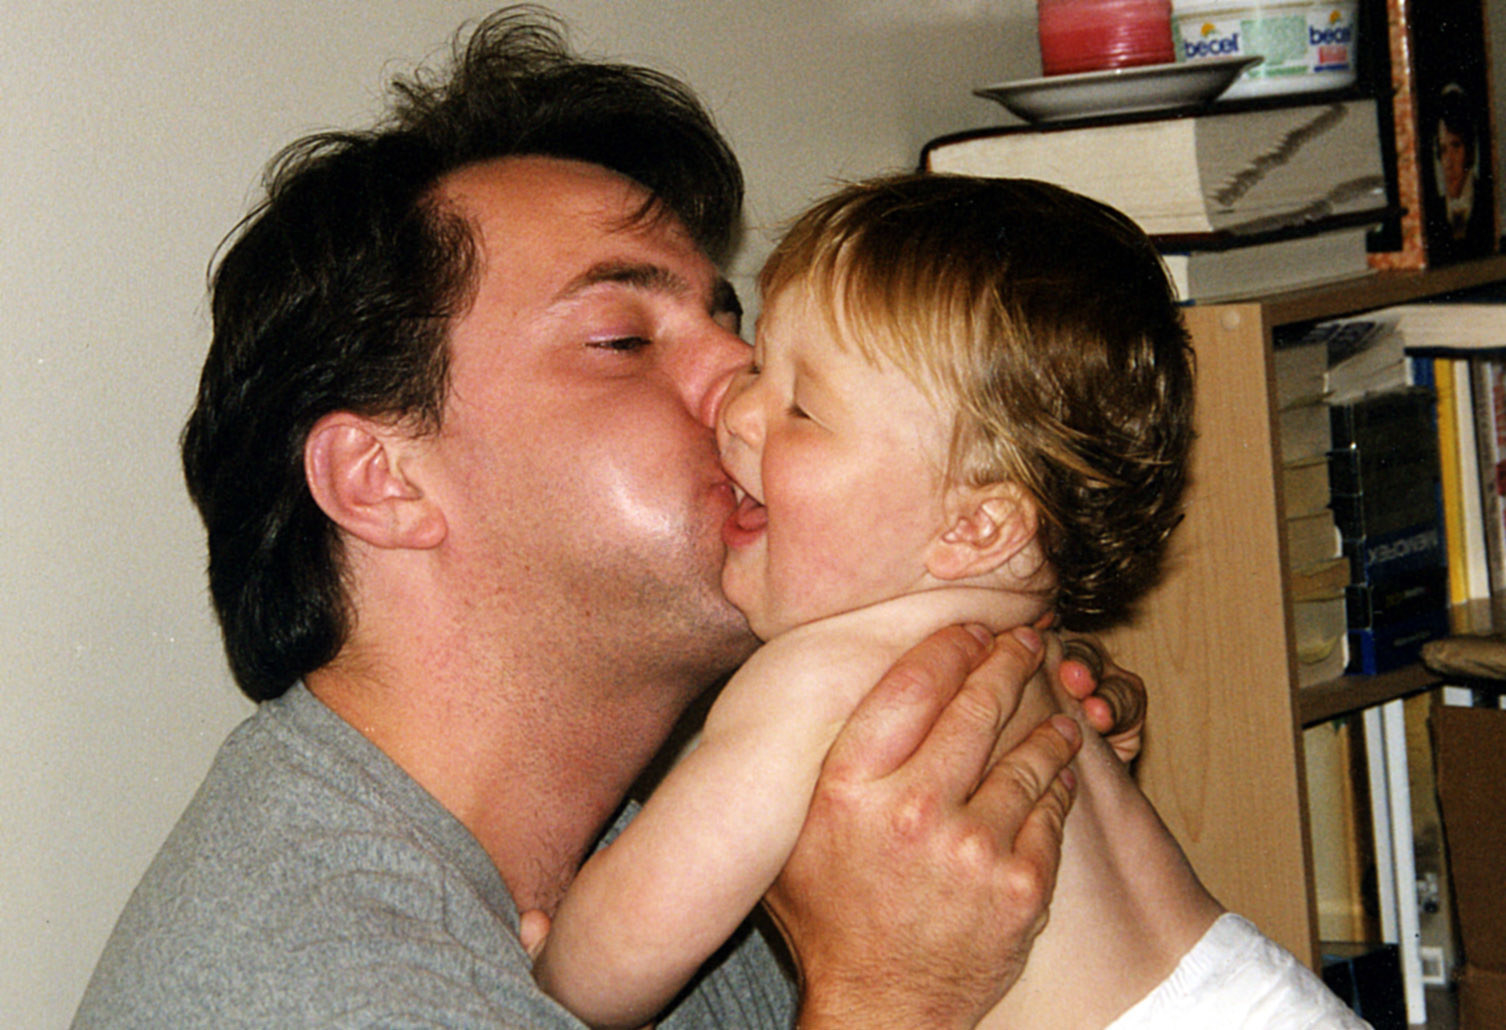 A man kisses his son